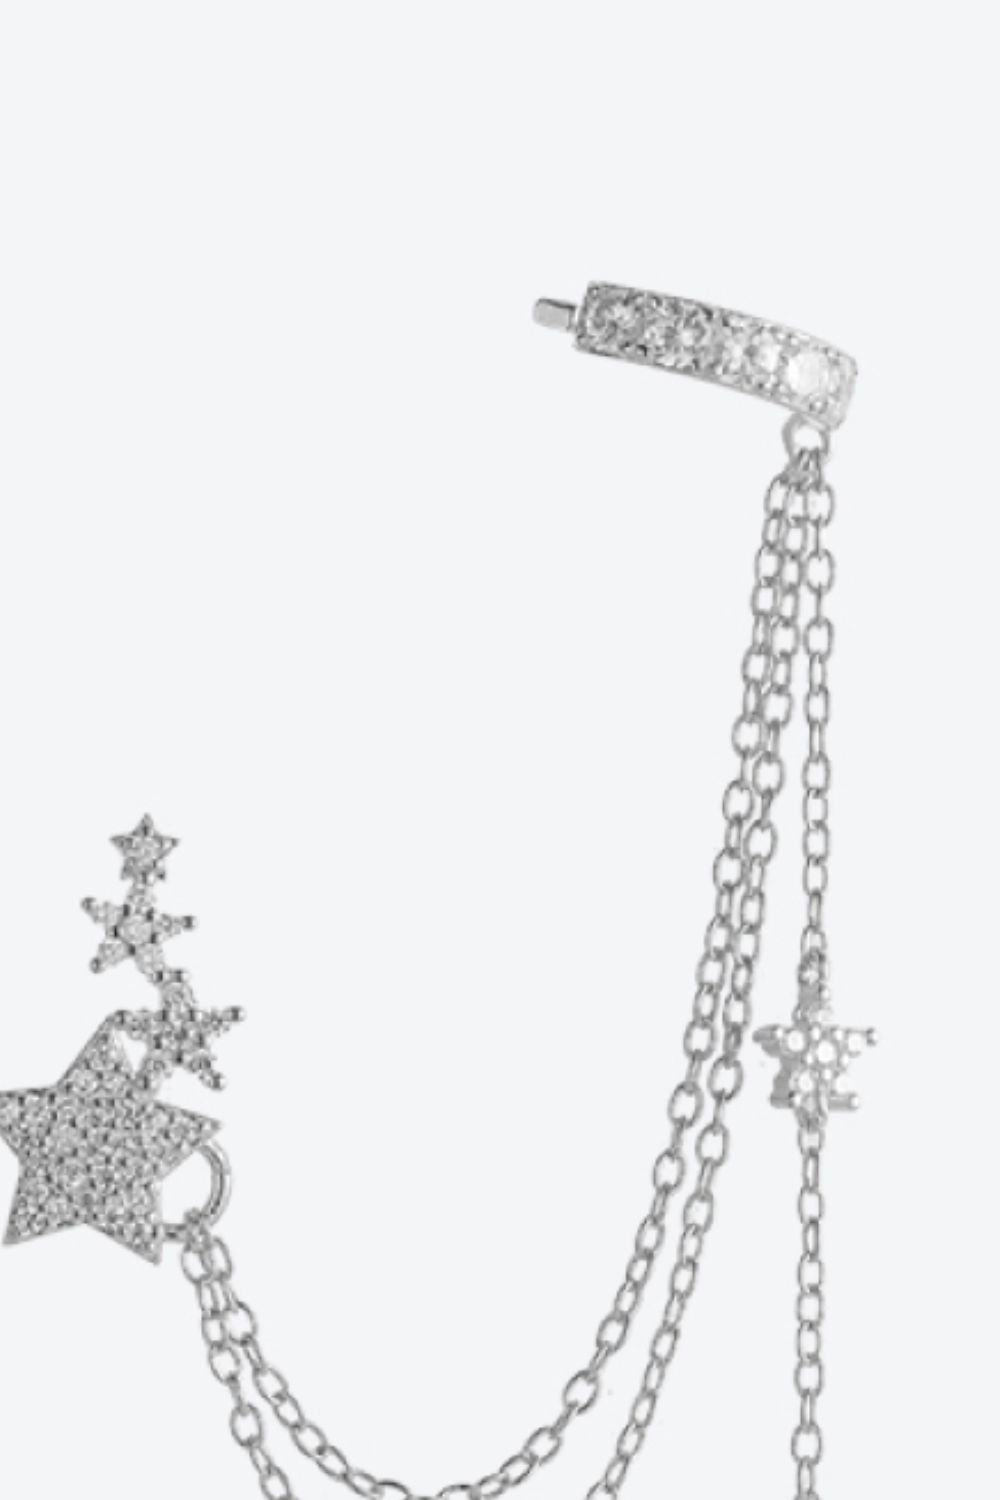 Delicate chain single Zircon Star earring 925 Sterling Silver